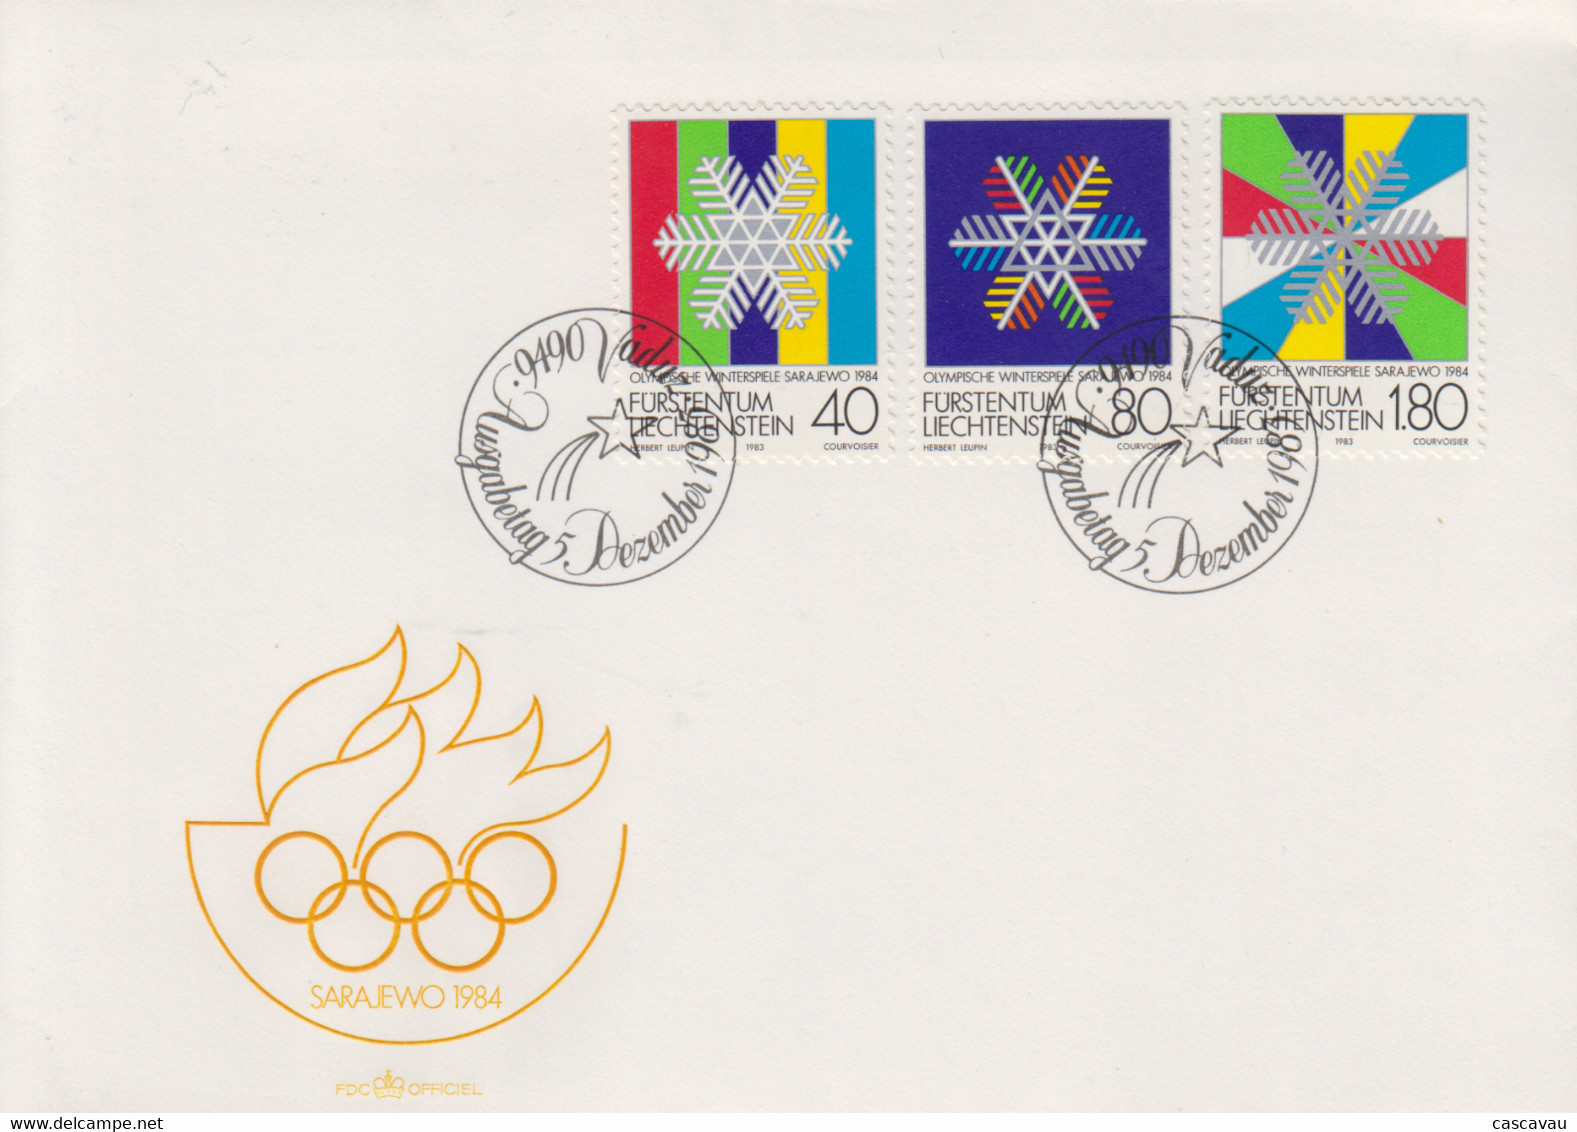 Enveloppe  FDC  1er  Jour   LIECHTENSTEIN    Jeux   Olympiques   SARAJEVO   1984 - Winter 1984: Sarajevo